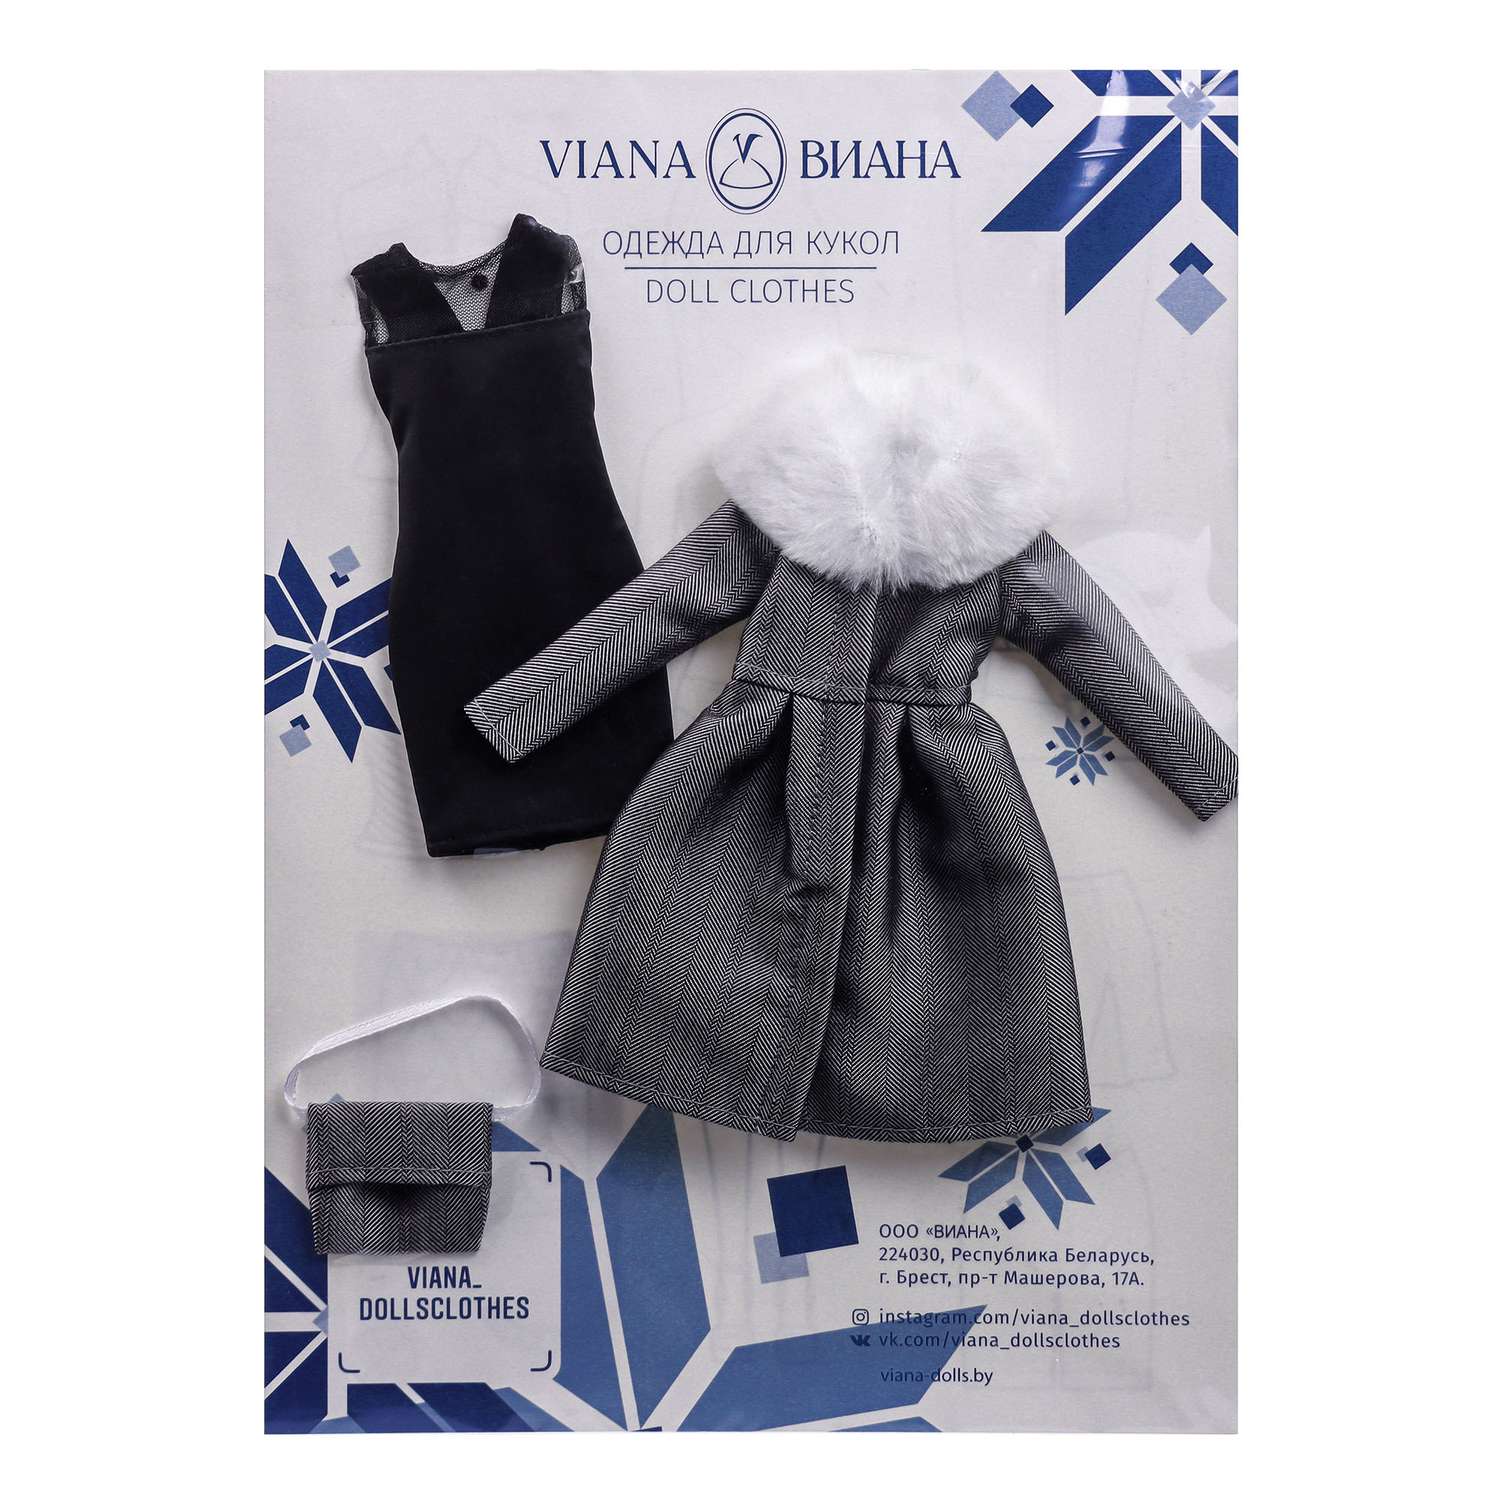 Одежда для кукол VIANA типа Барби 125.07.9 черное платье и серое пальто с сумочкой 1257.9 - фото 1